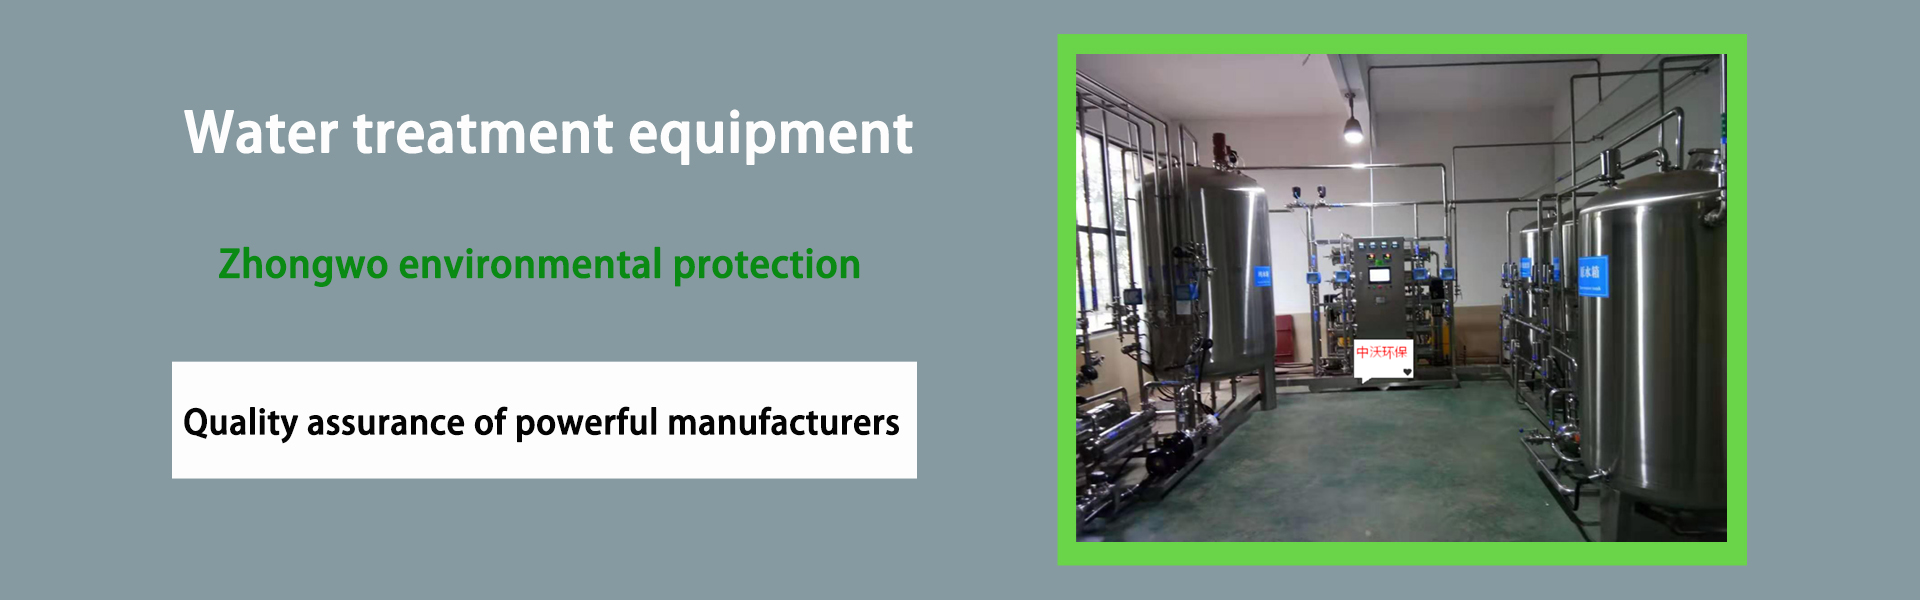 อุปกรณ์บำบัดน้ำ, อุปกรณ์ทำน้ำให้บริสุทธิ์, อุปกรณ์ป้องกันสิ่งแวดล้อม,Foshan zhongwo Environmental Protection Technology Co Ltd.